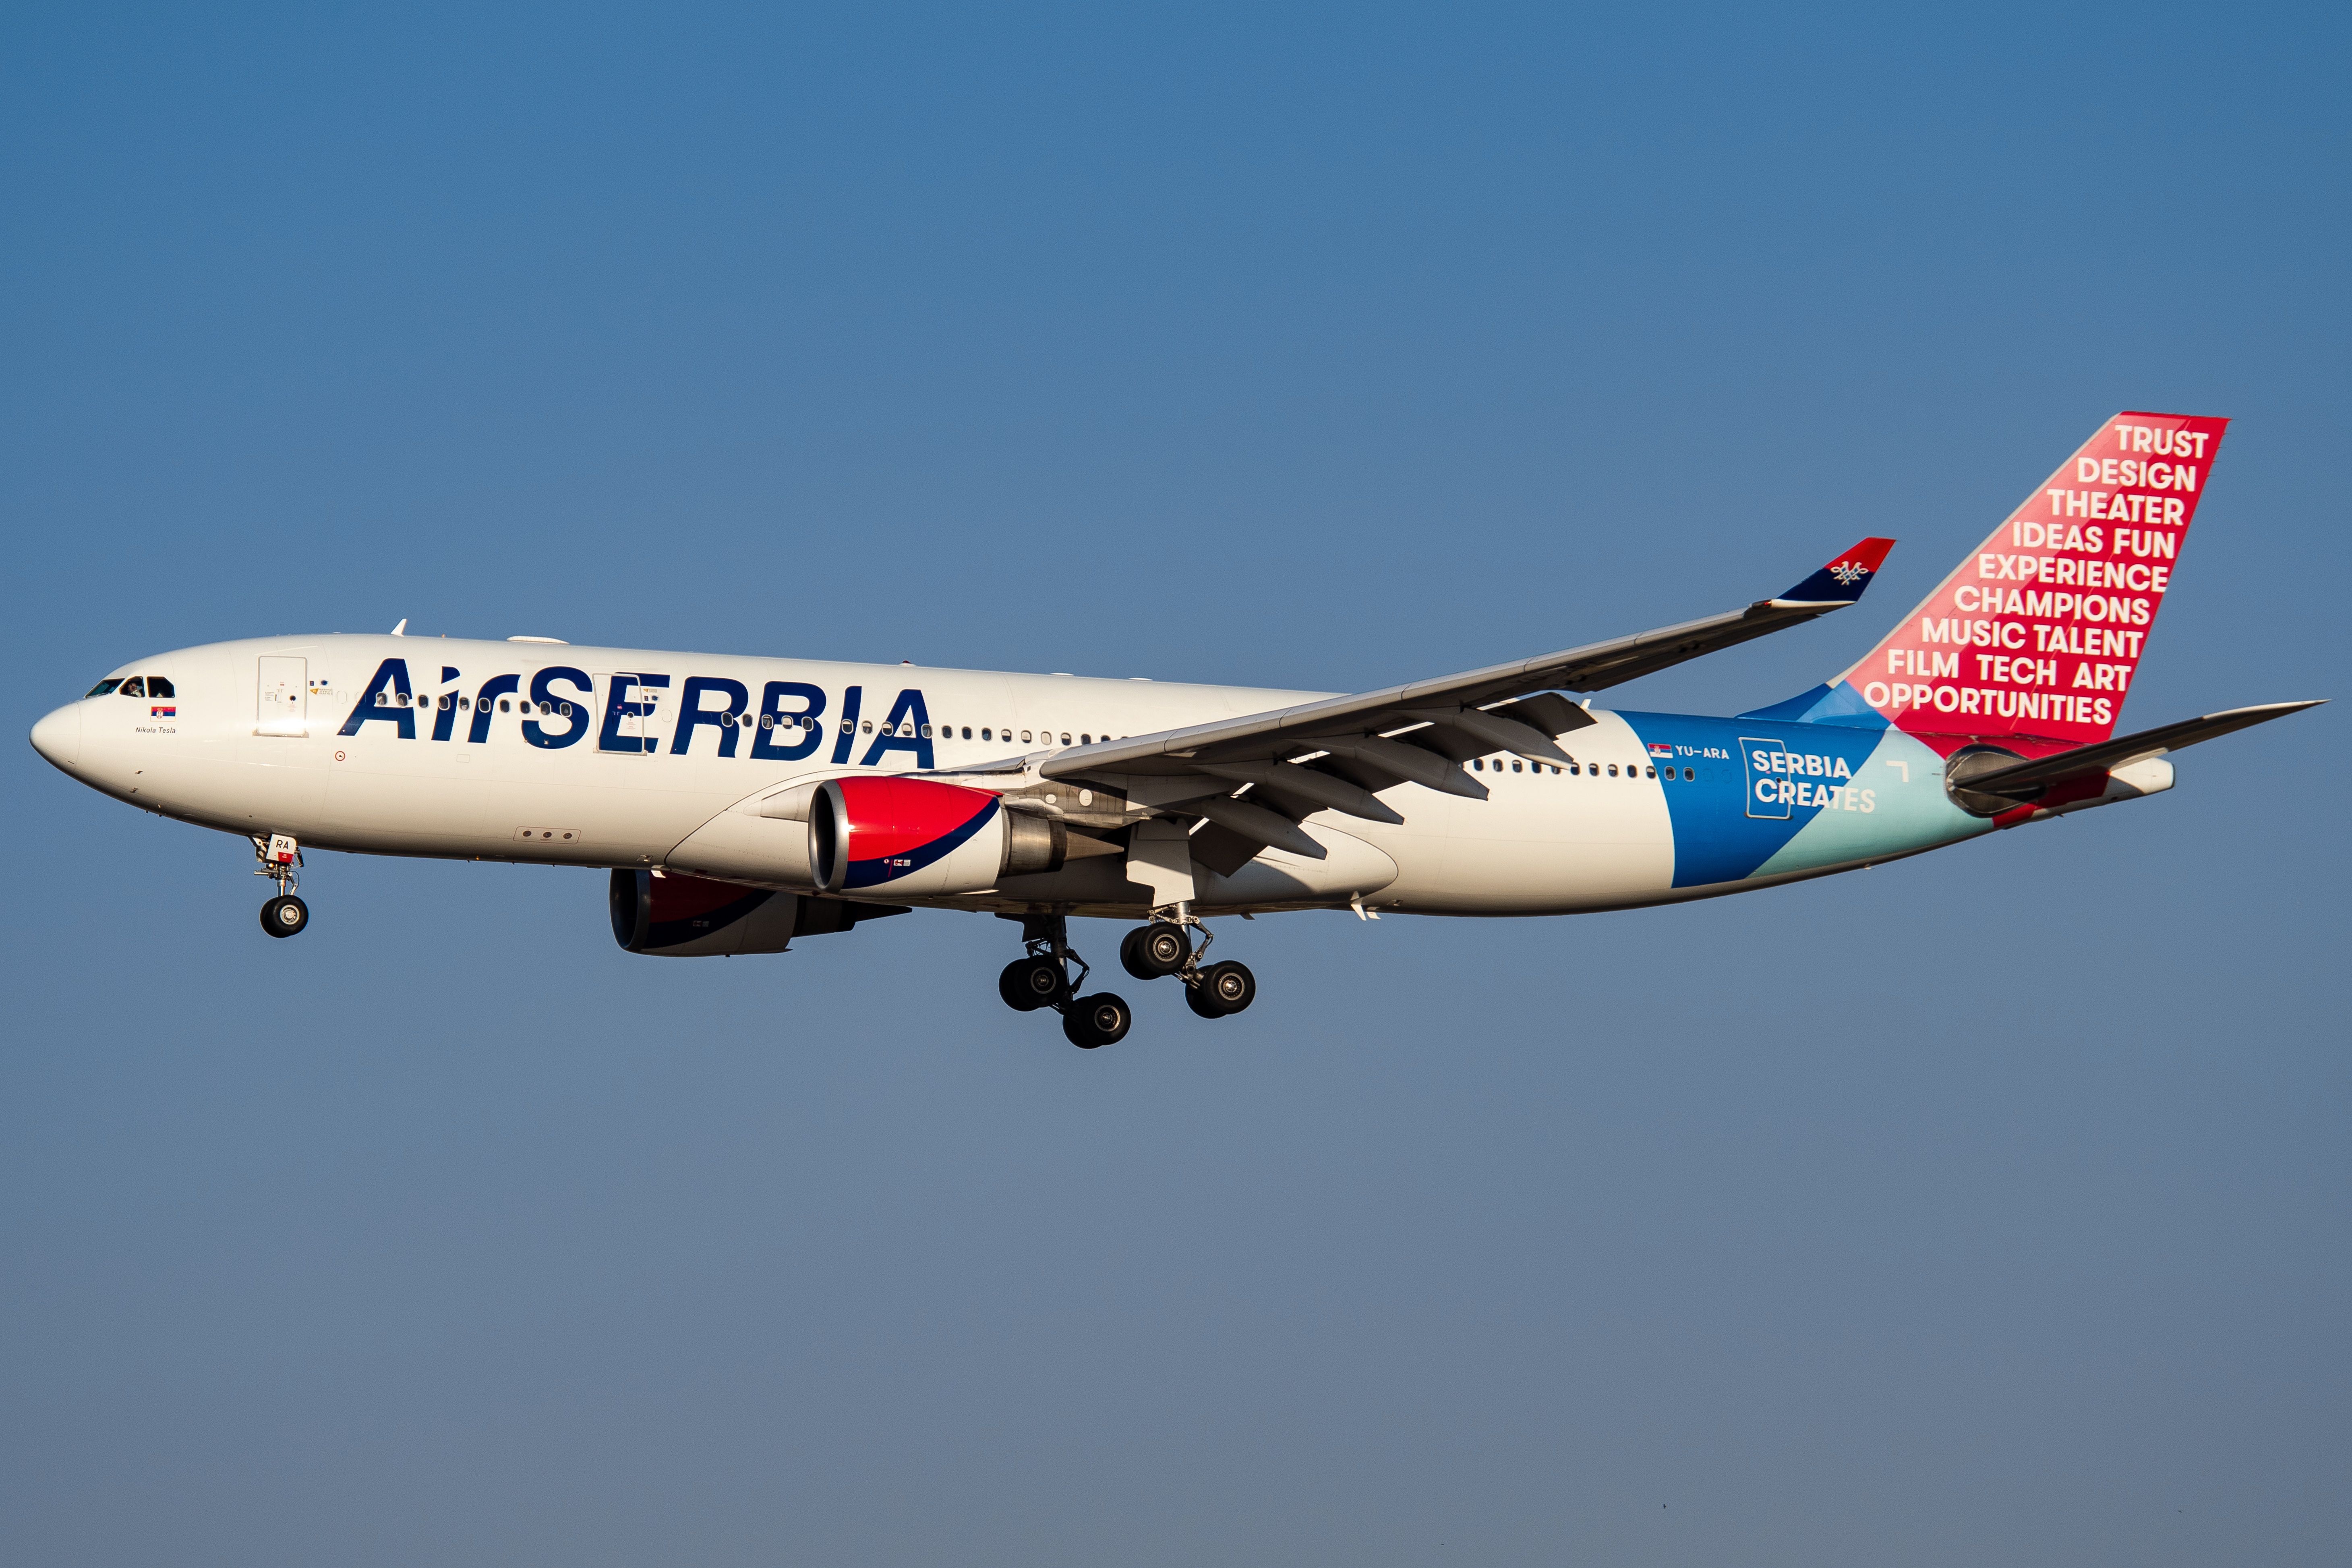 An Air Serbia Airbus A330-200 on final approach